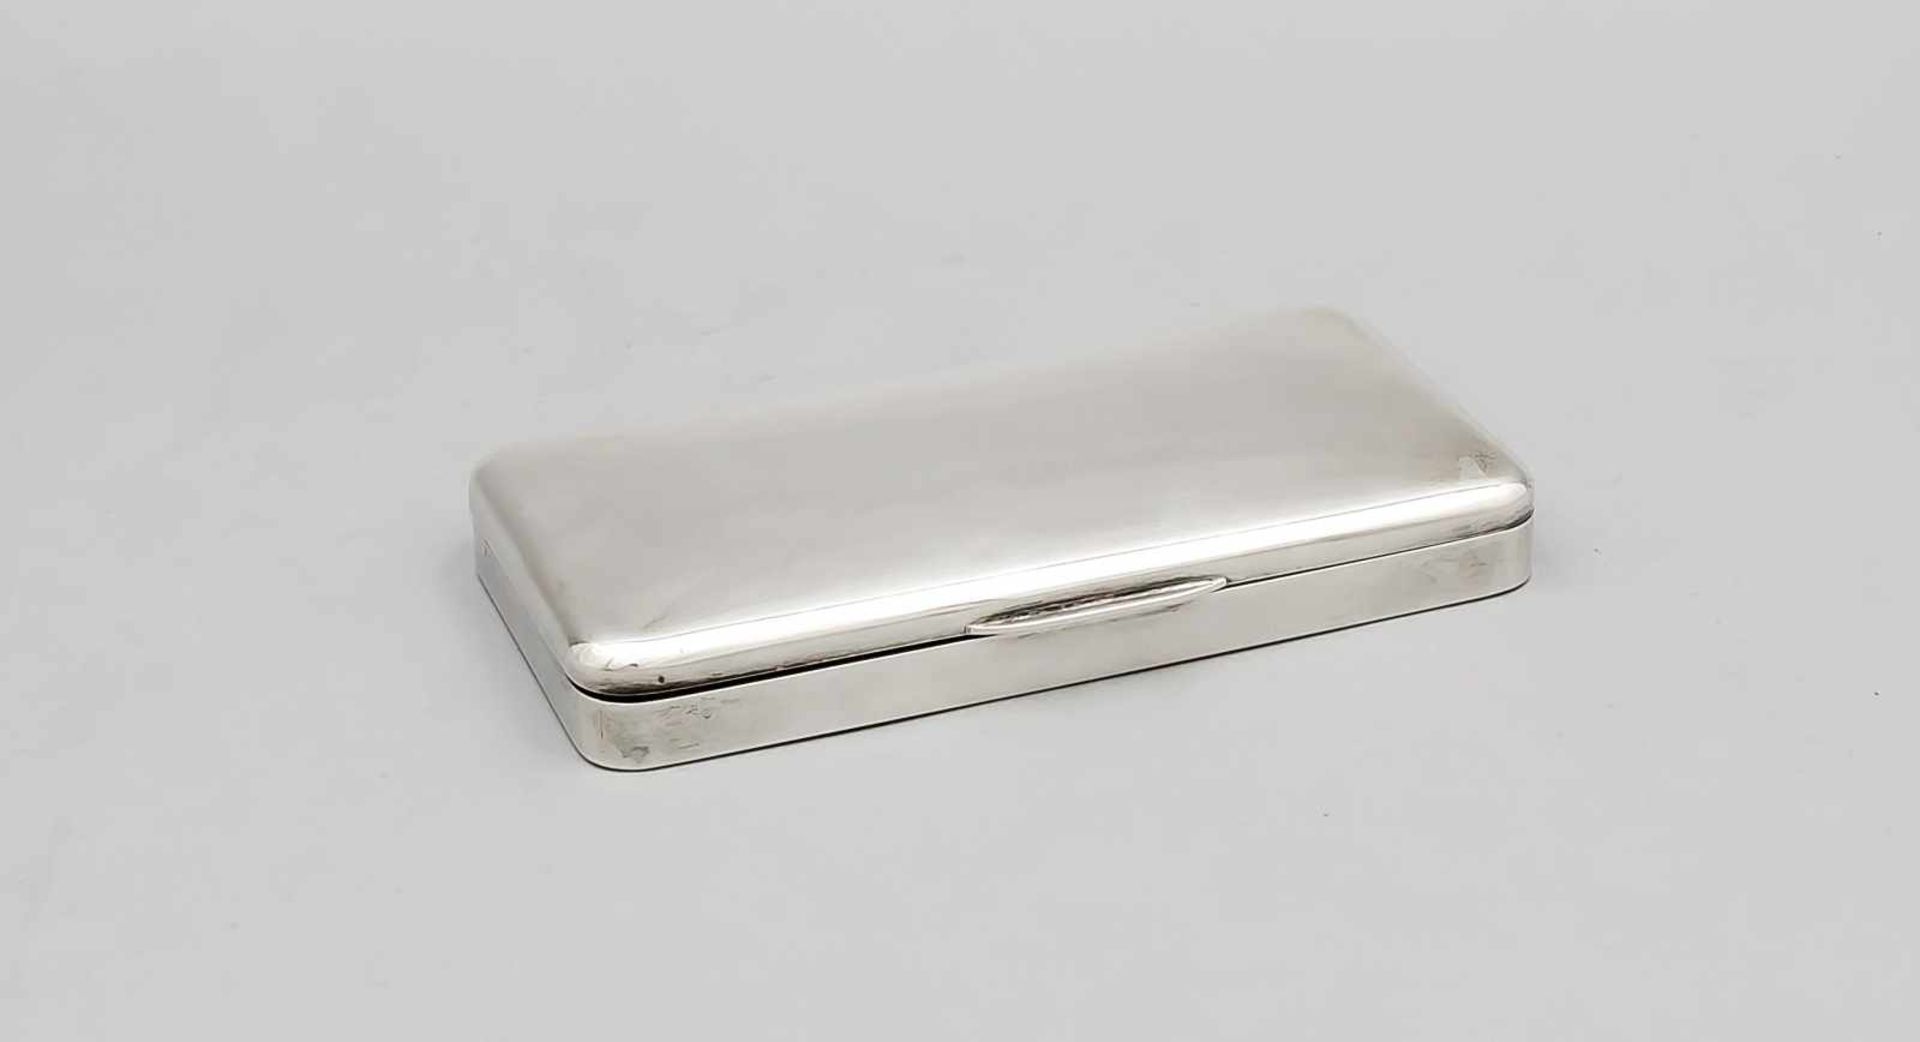 Rechteckige Deckeldose, 20. Jh., Silber 800/000, glatte, flache Form, abgerundete Ecken,L. 18 cm,